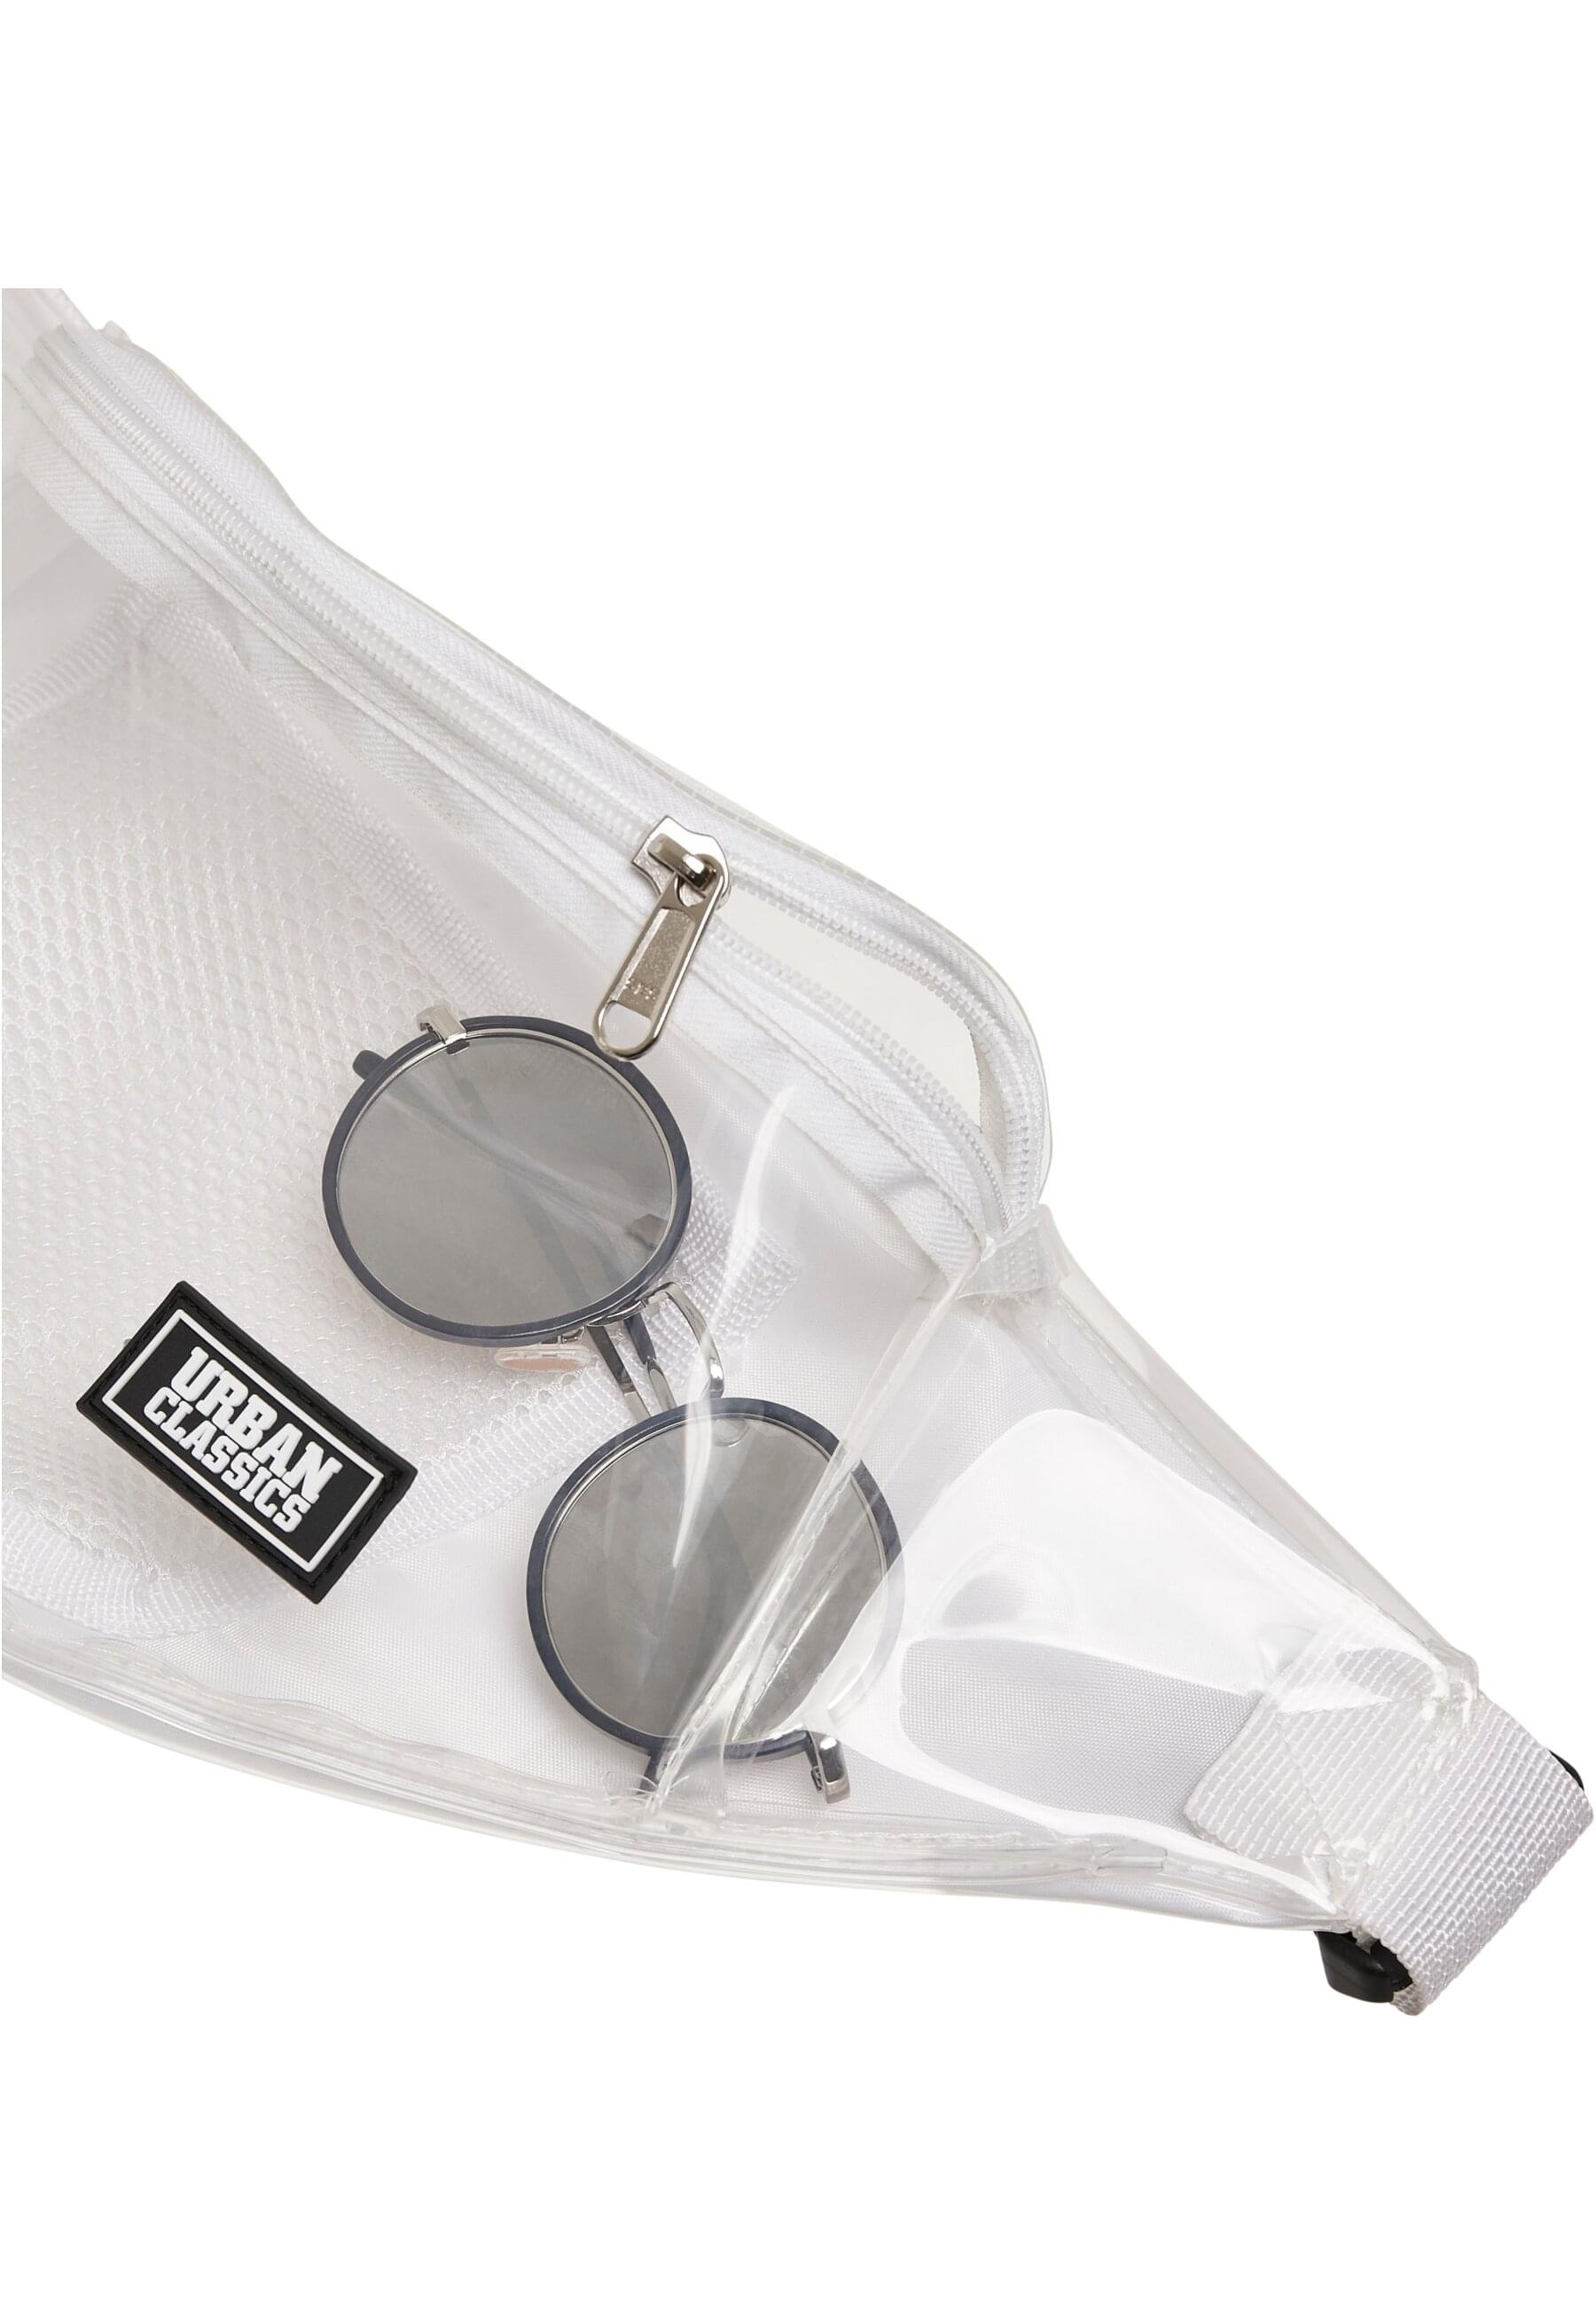 URBAN CLASSICS Mini Bag »Urban Classics Unisex Transparent Shoulder Bag«, (1 tlg.)